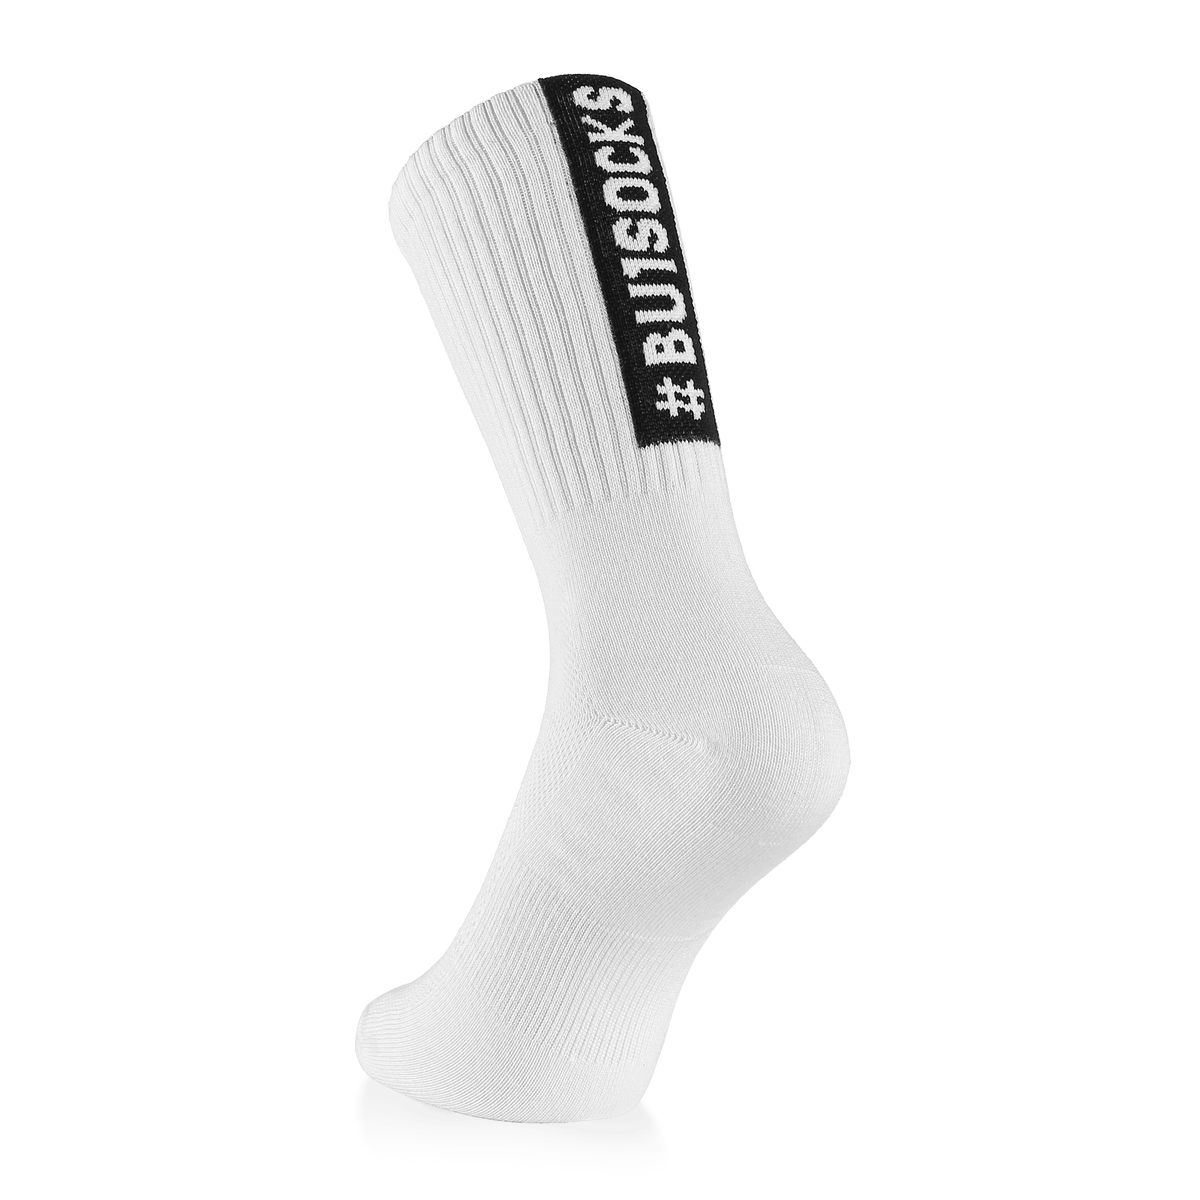 BU1 sports socks white